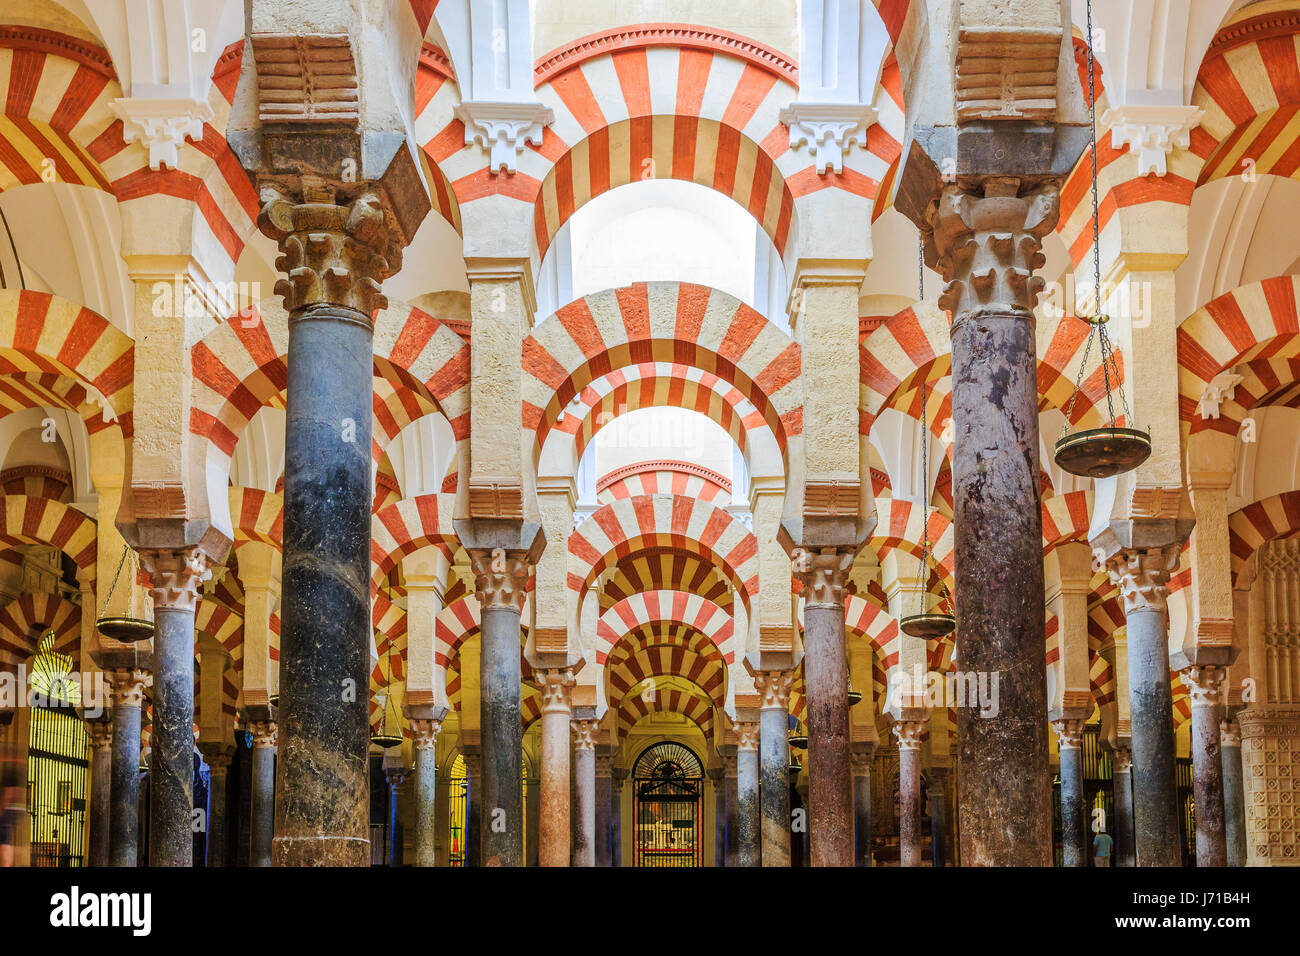 CORDOBA, Spagna - 29 Settembre 2016: vista interna di La Cattedrale Mezquita di Cordova, Spagna. Cattedrale costruita all'interno dell'ex Grande moschea. Foto Stock